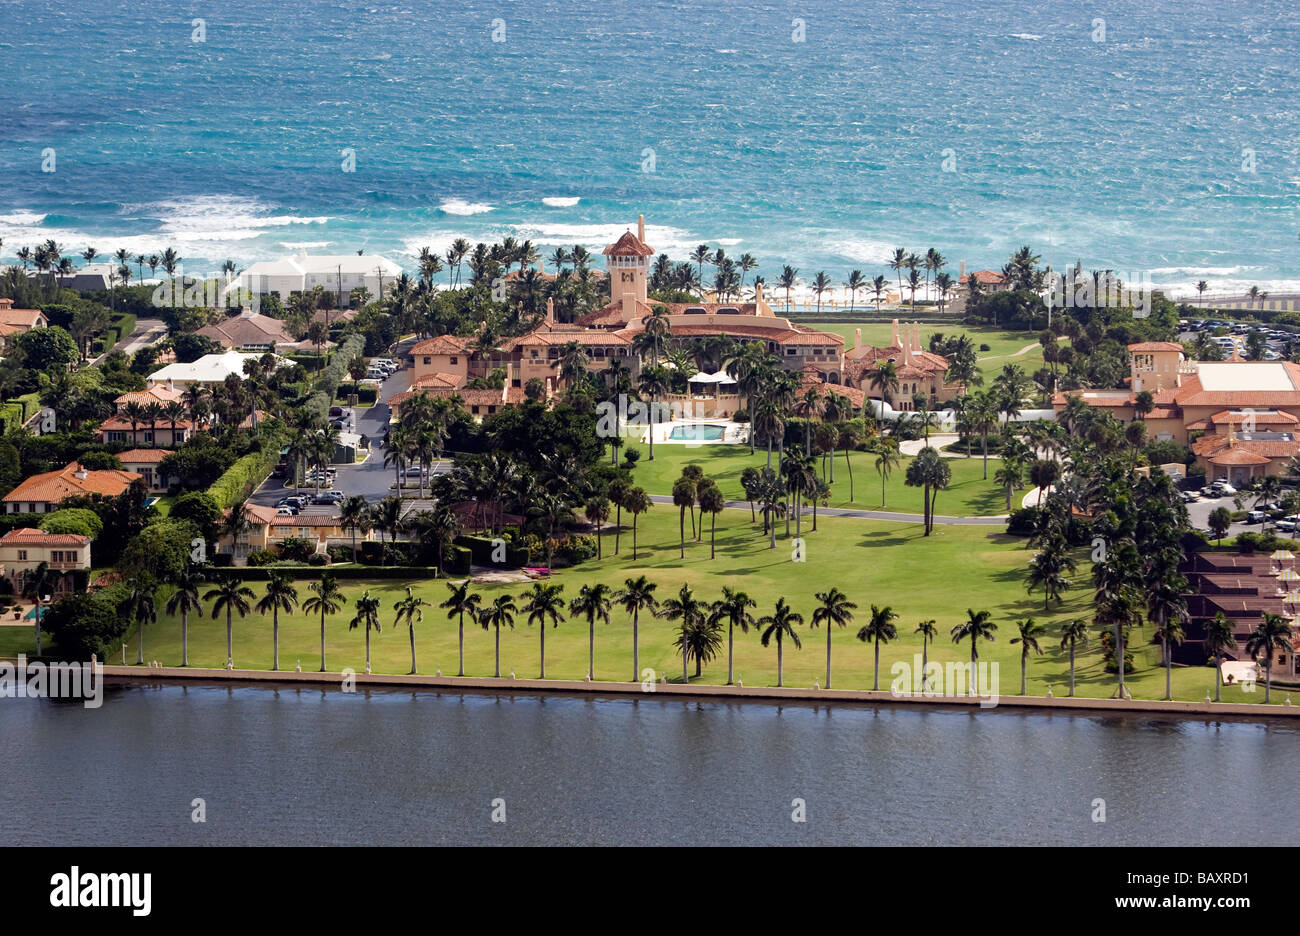 Mar-a-Lago Club - Palm Beach, Florida Stock Photo